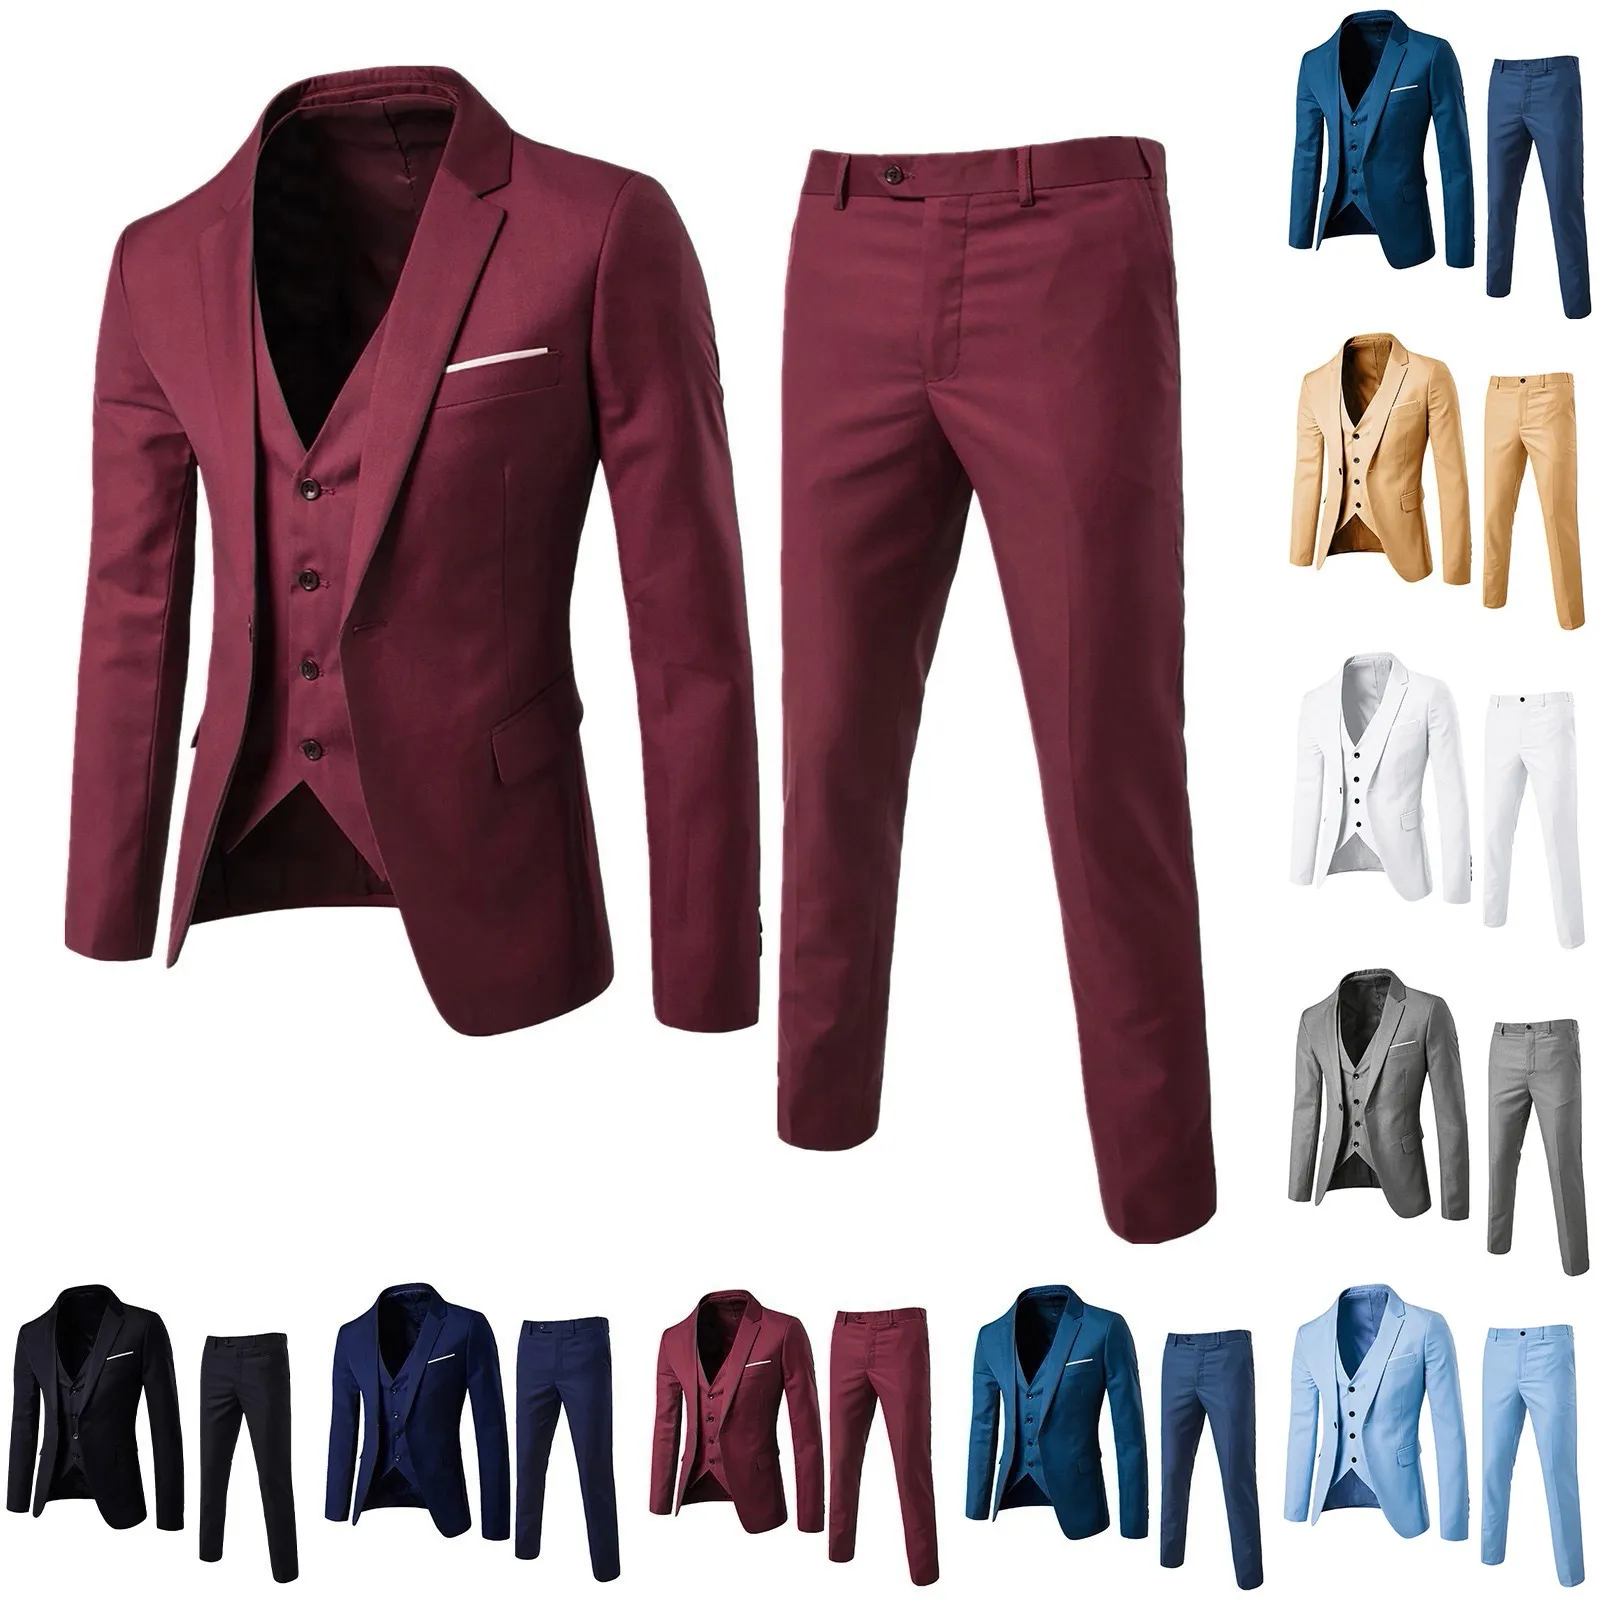 

Мужской костюм из 3 предметов: пиджак + жилет + брюки